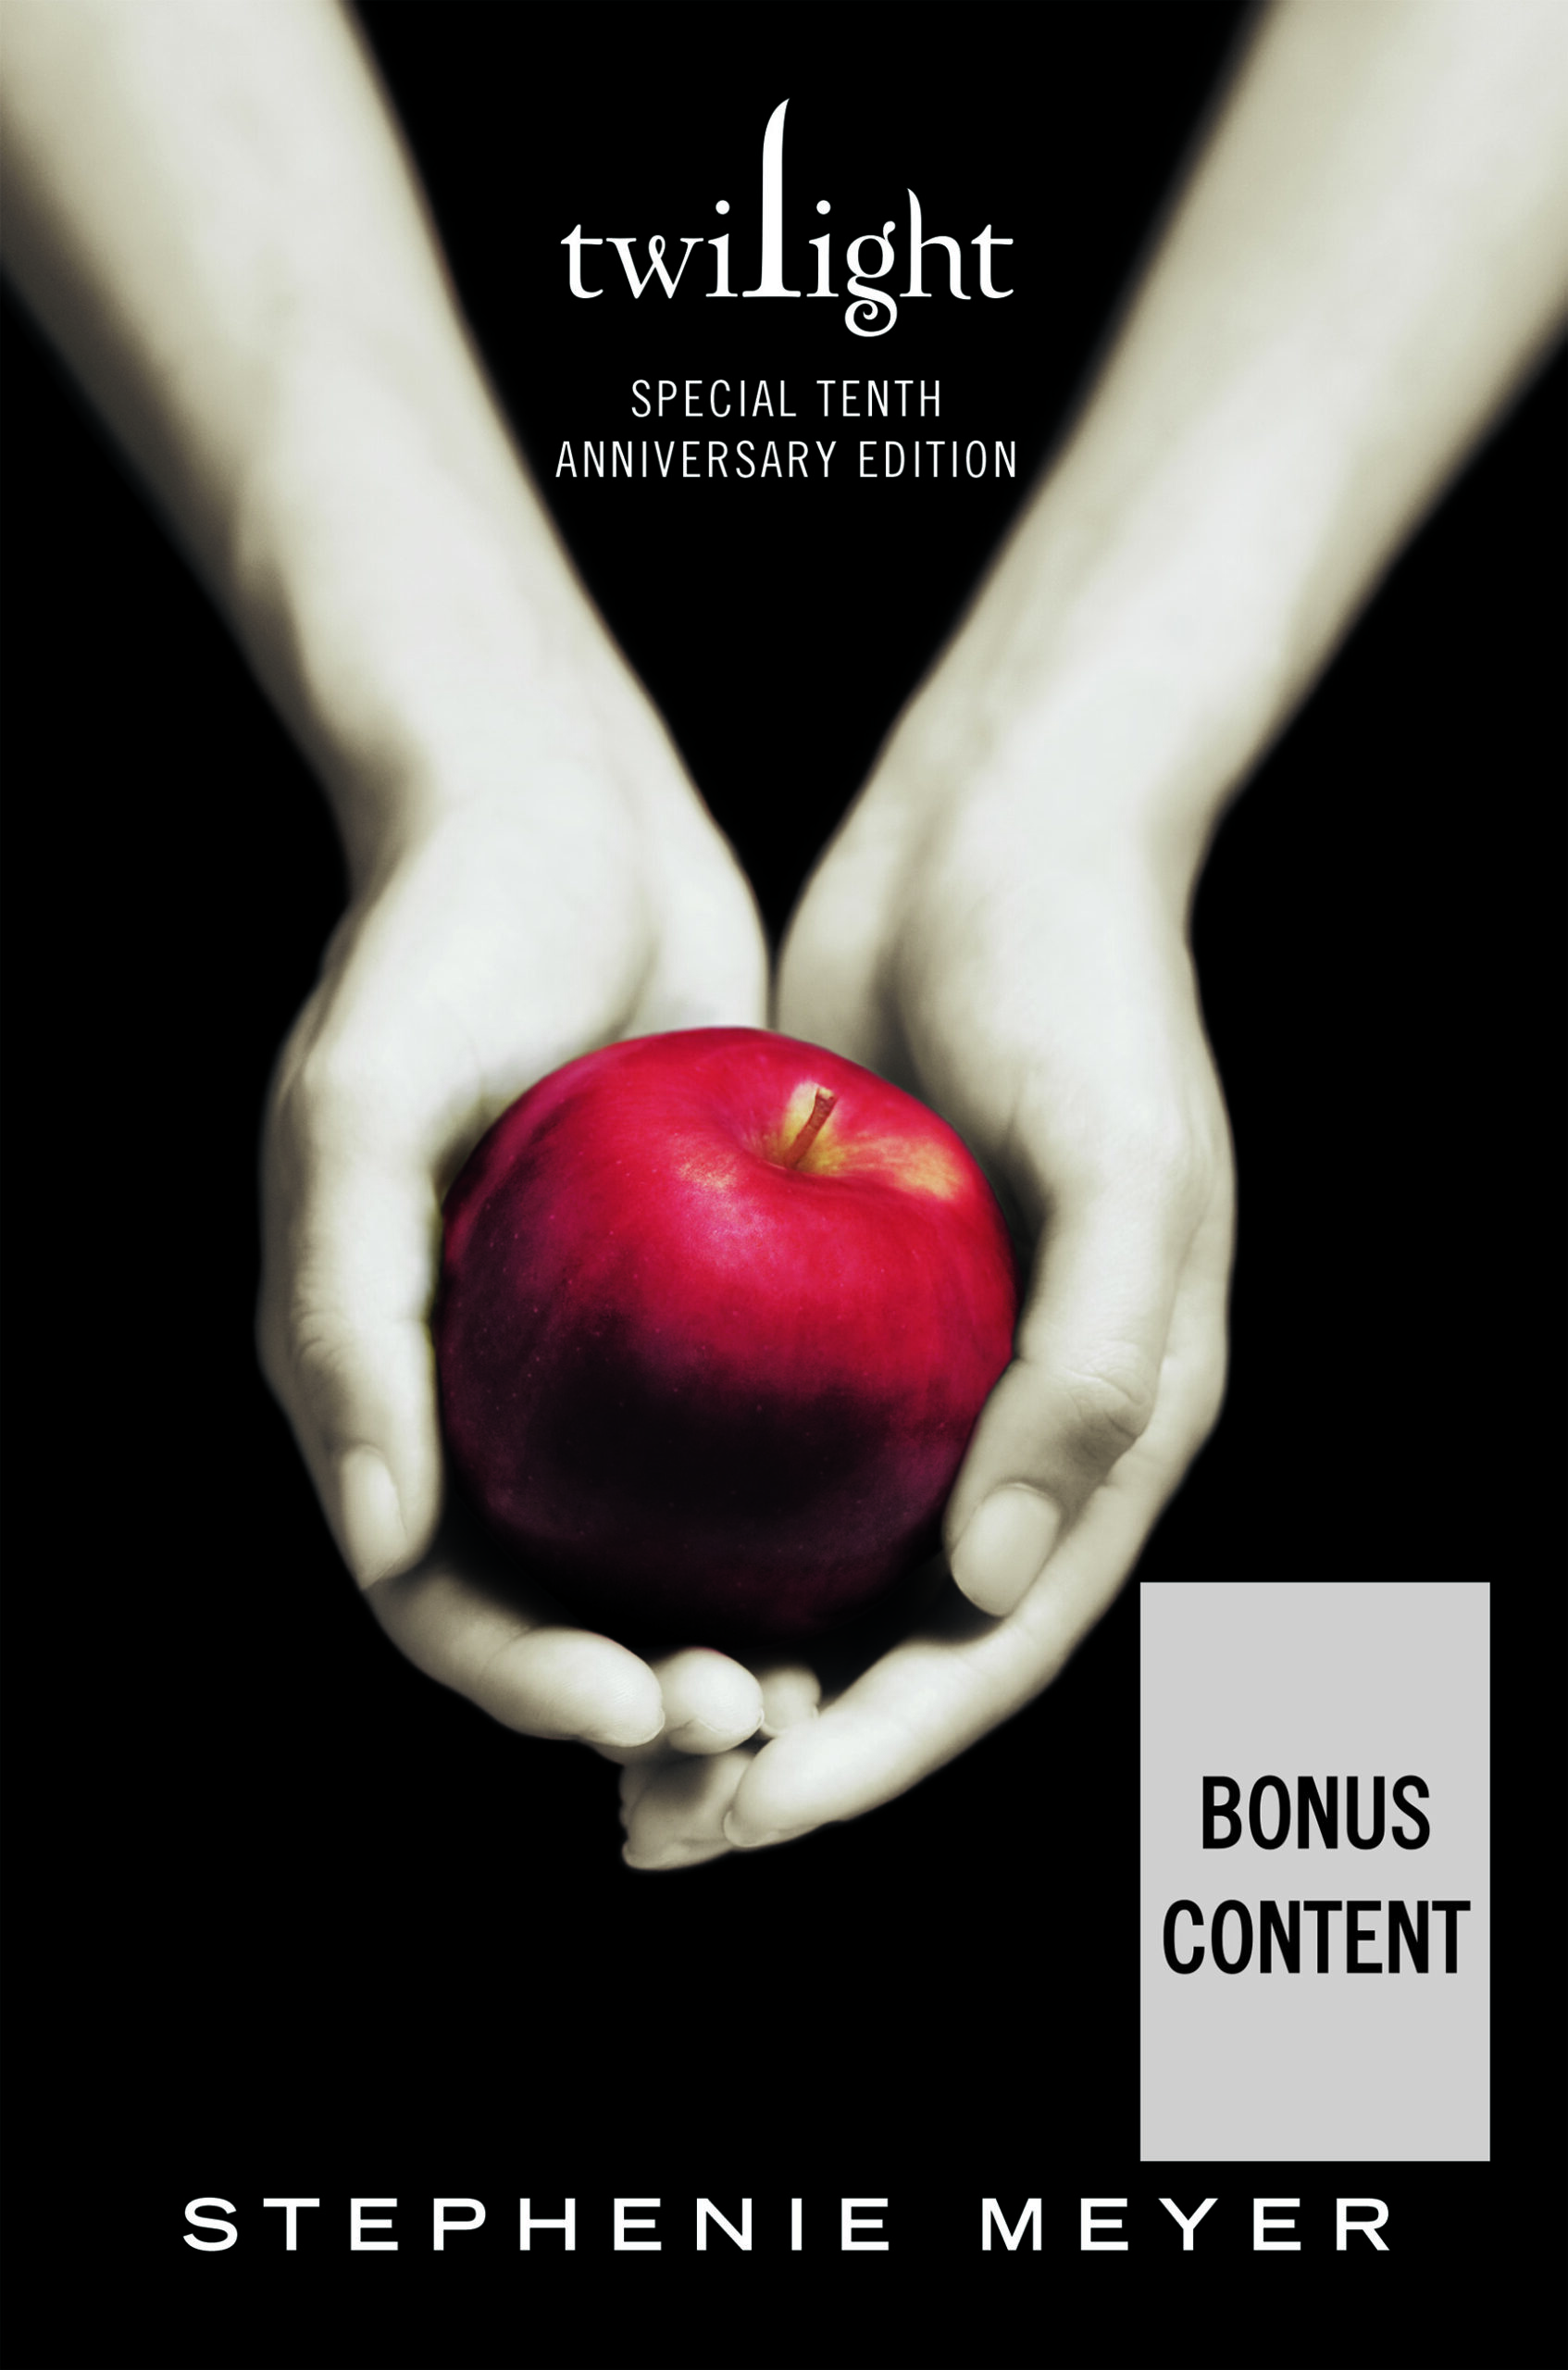 Twilight 10th Anniversary Bonus Content! - Diana Elizabeth